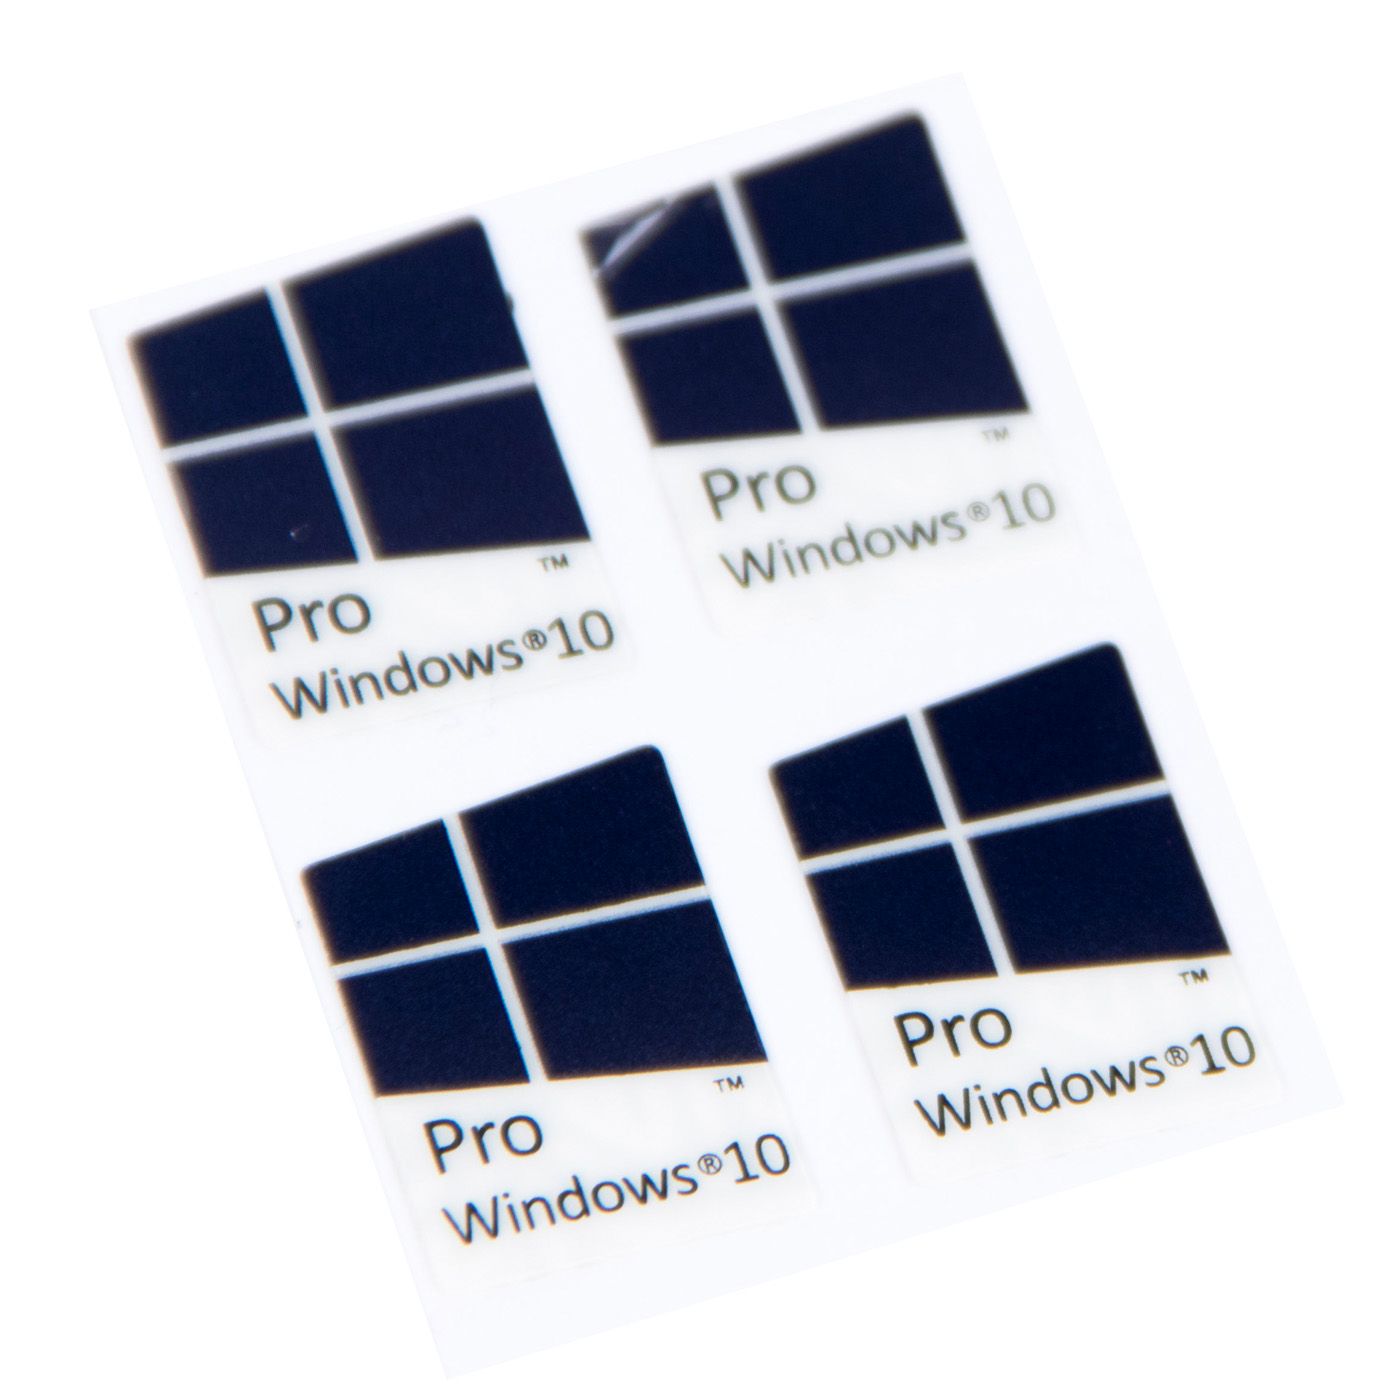 Windows 11 Sticker